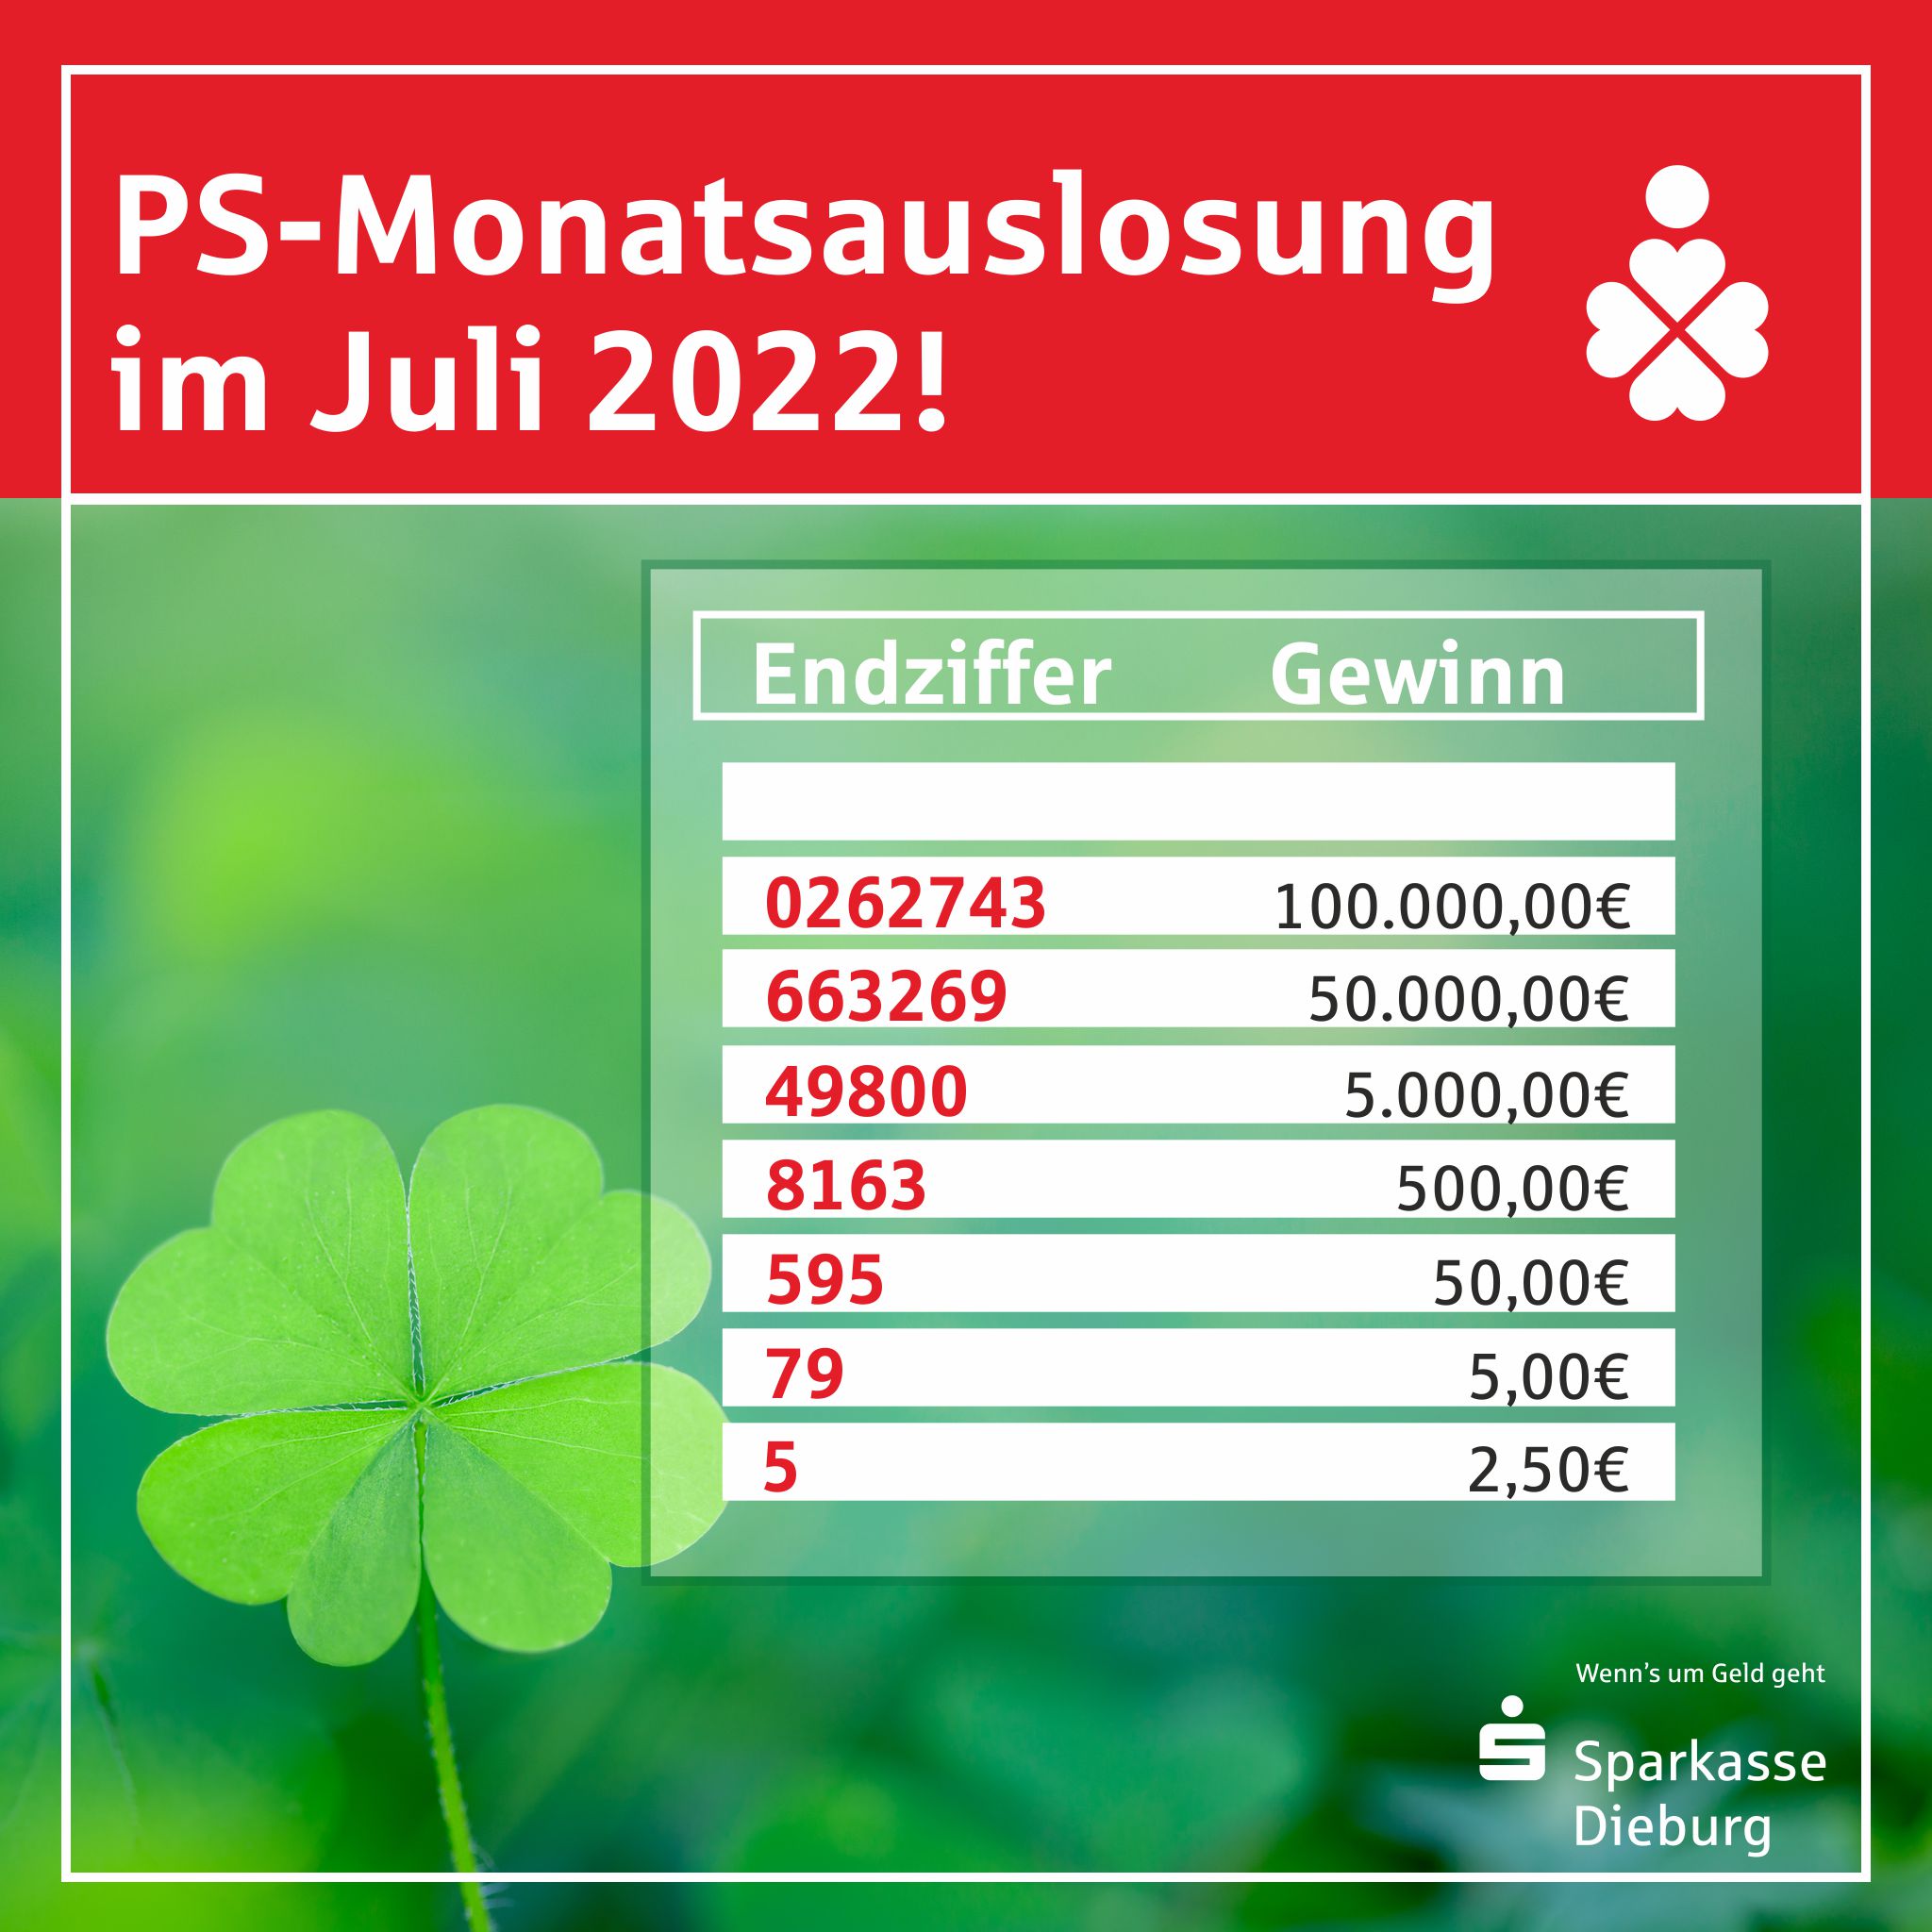 PS-Monatsauslosung im Juli – die Gewinnzahlen!